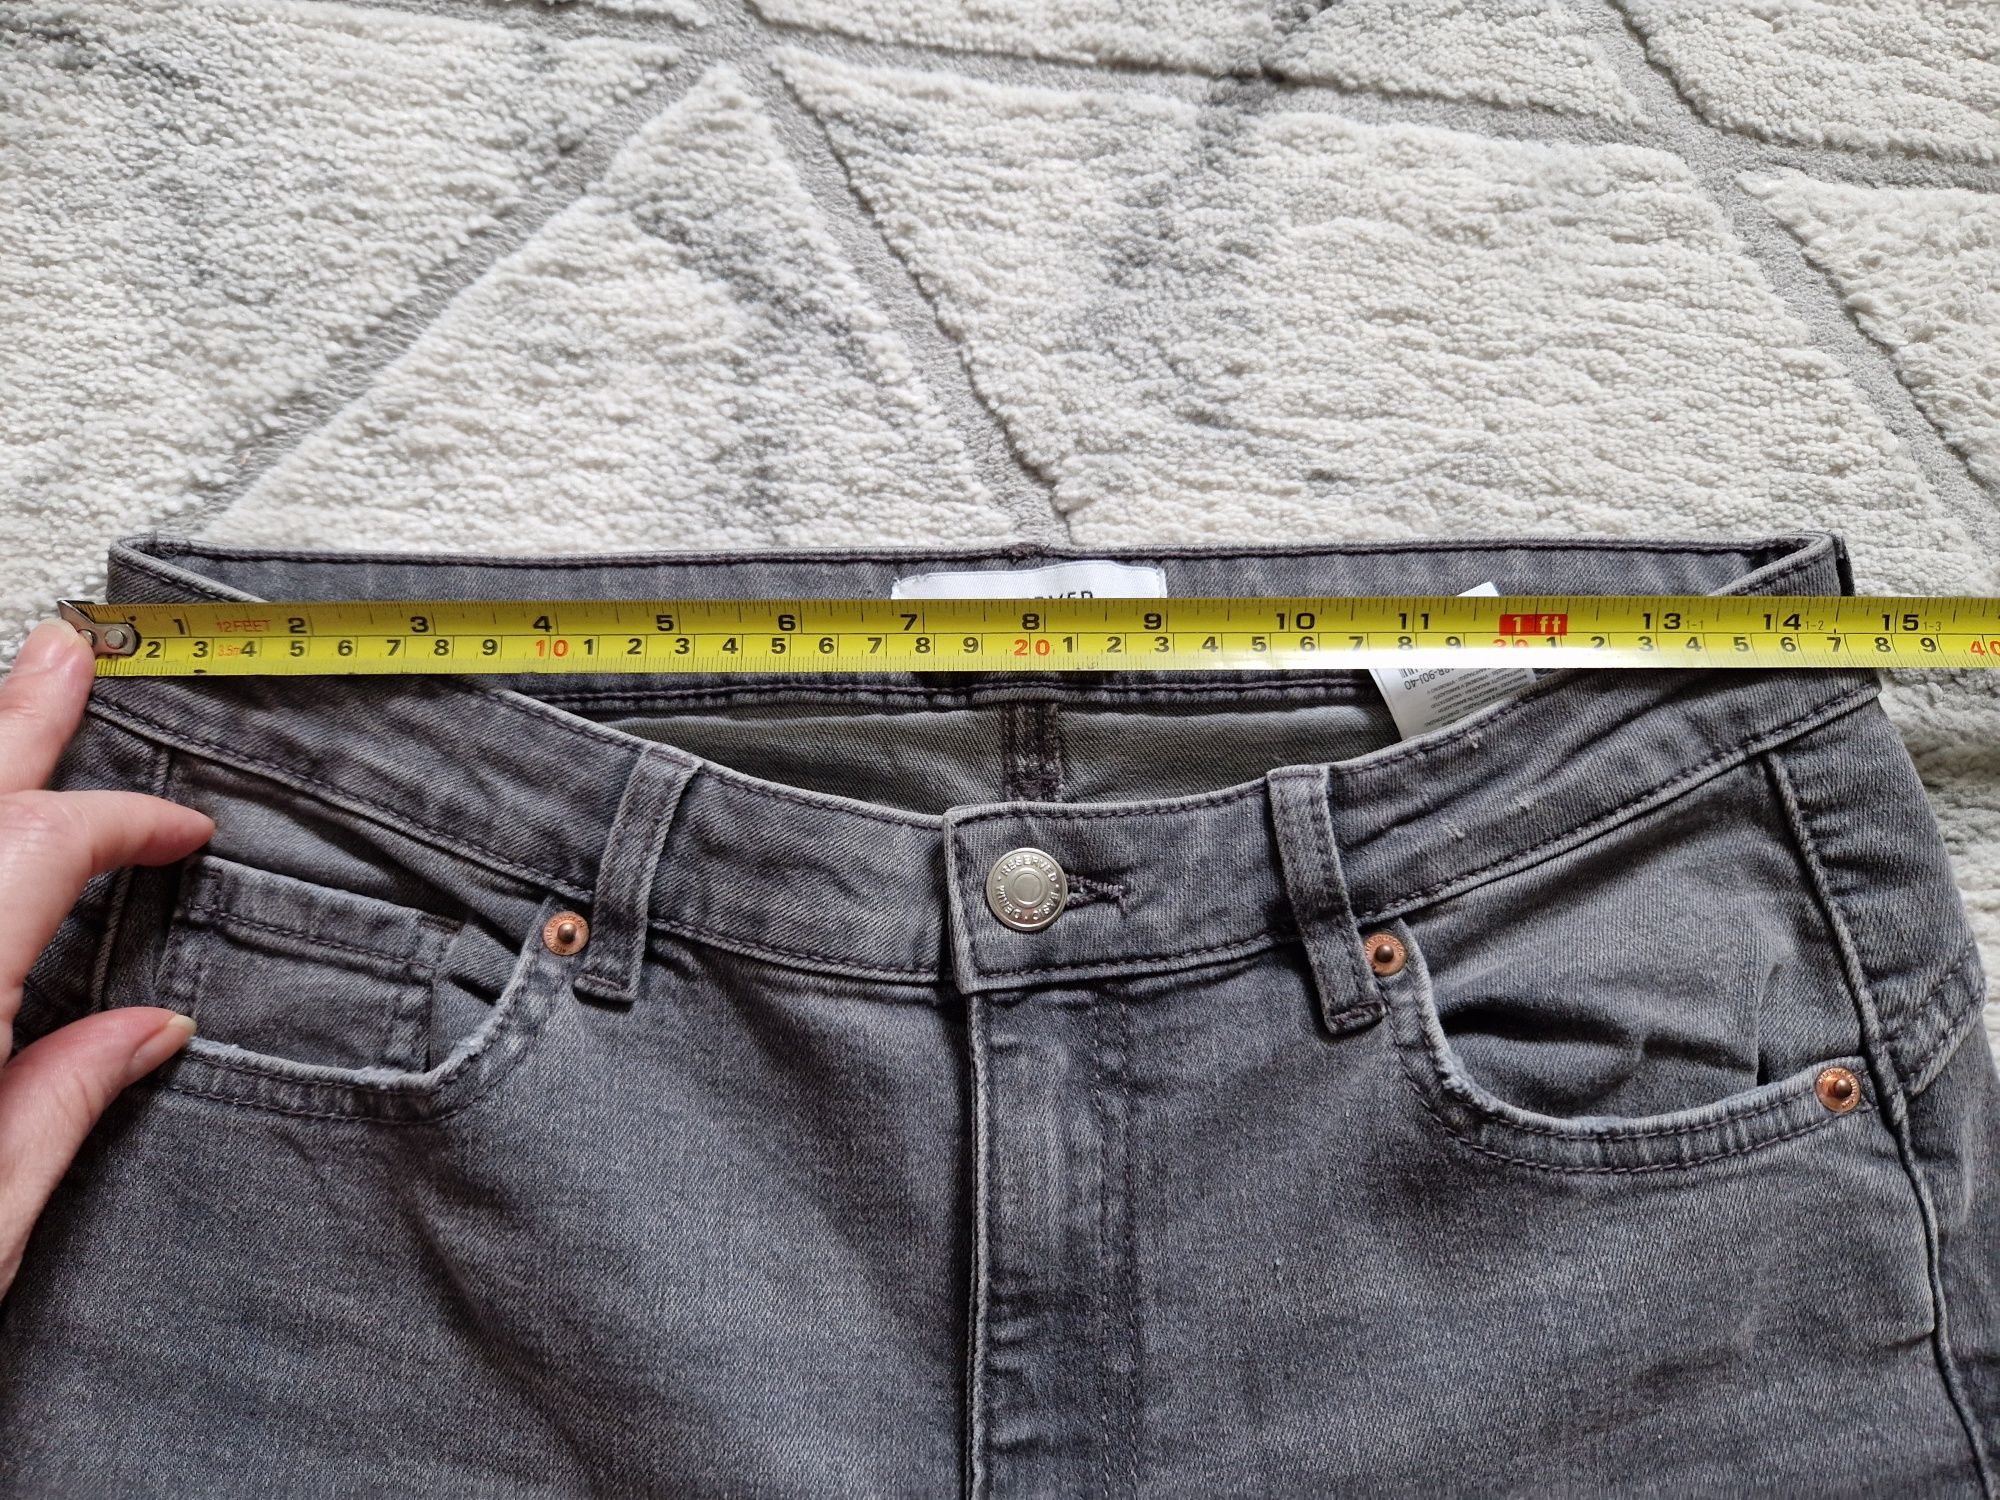 Jeansowe DAMSKIE szare/ grafitowe spodnie roz M / 38 firmy RESERVED